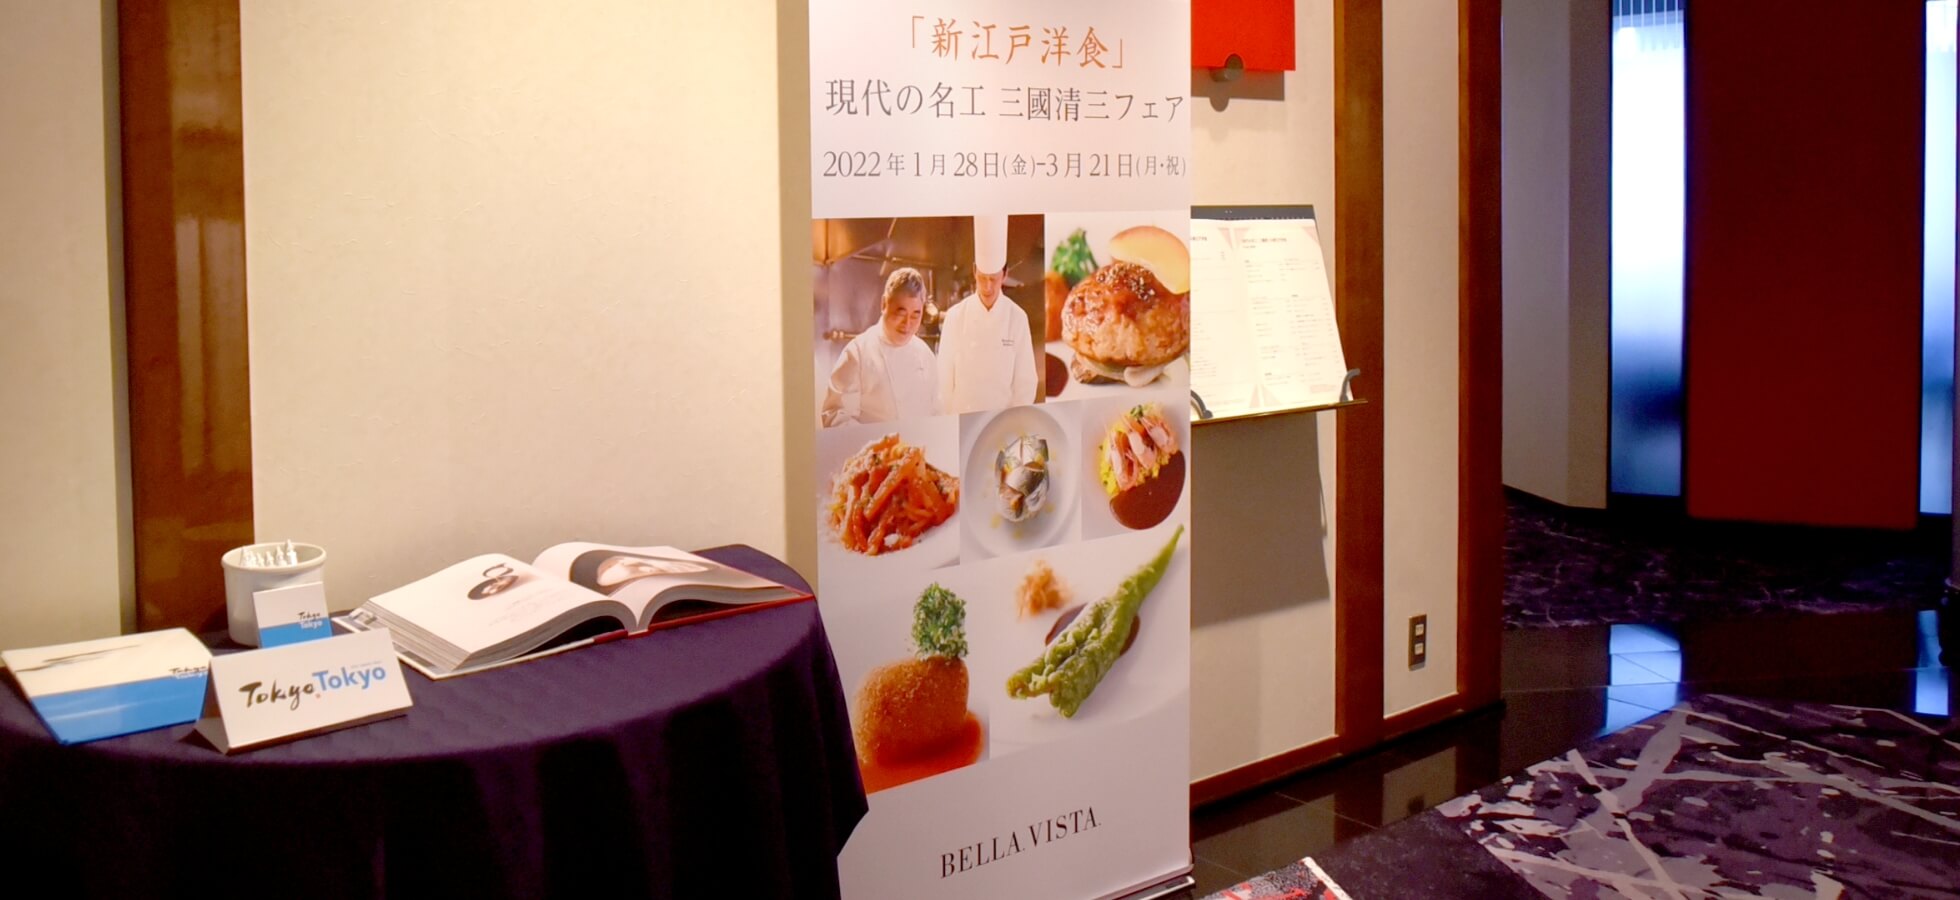 『新江戸洋食』ベッラ・ヴィスタ×Tokyo Tokyo オープニング記念フェア キービジュアル